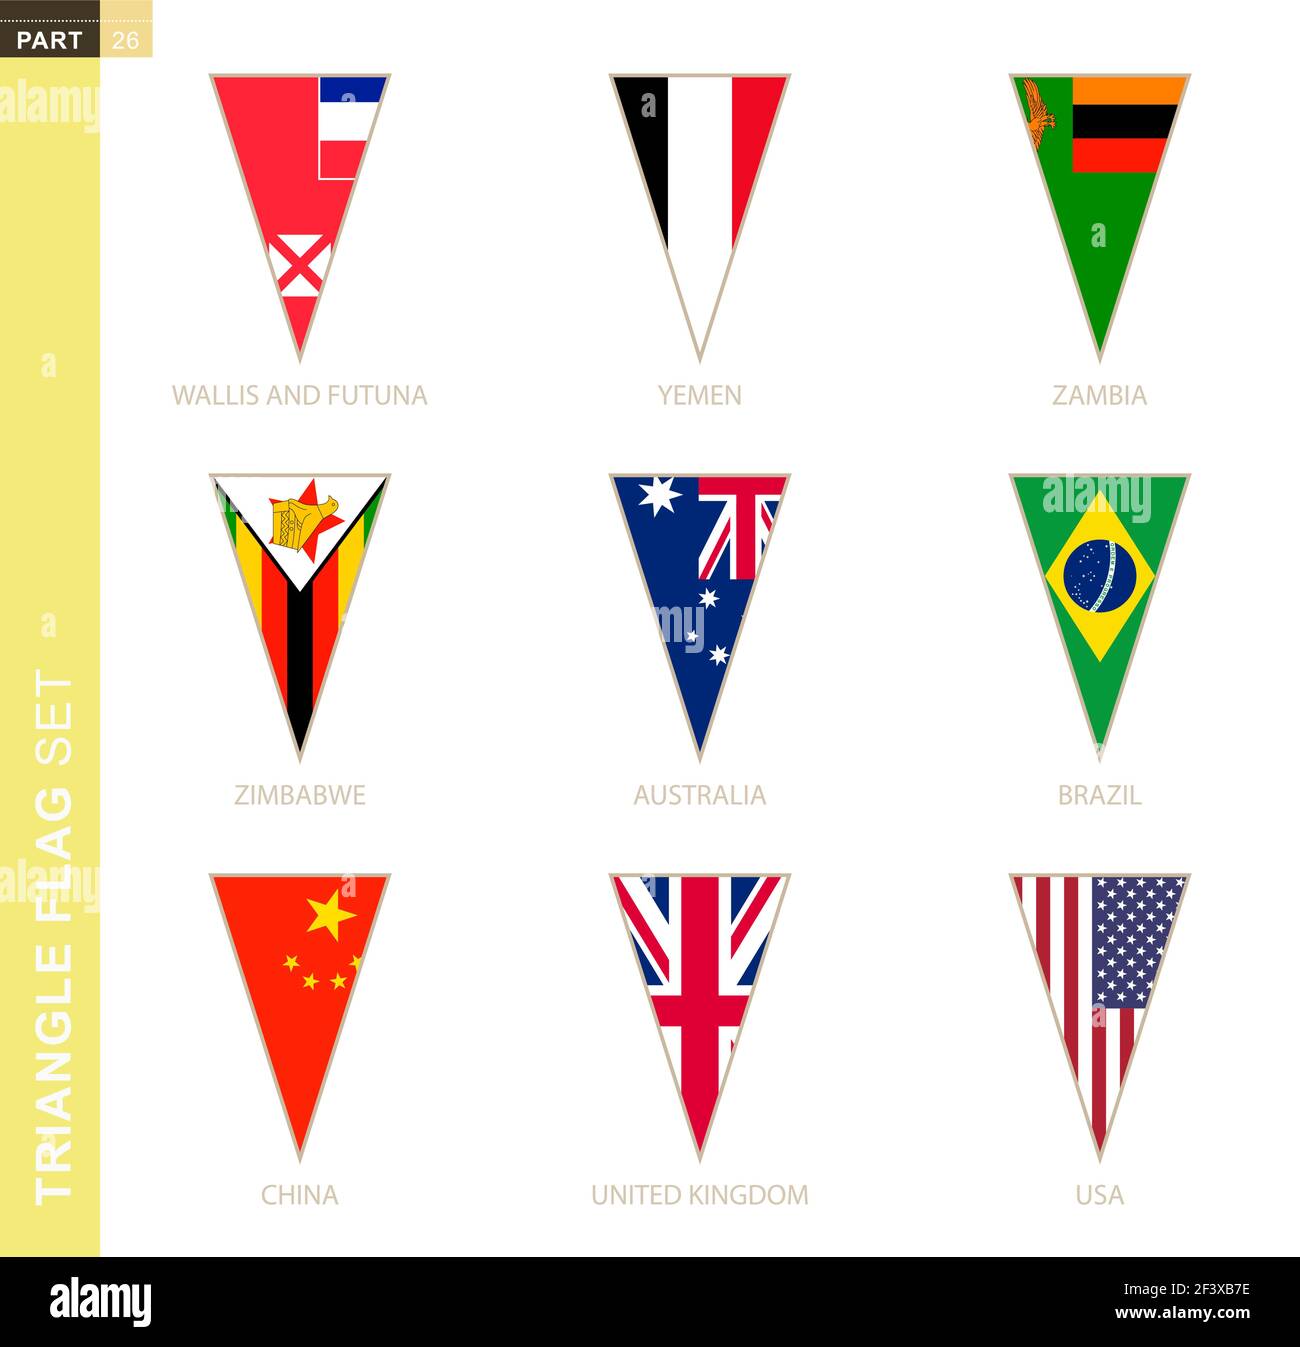 Triangle flag set, stylized country flags of Australia, Brazil, China, UK, USA, Wallis and Futuna, Yemen, Zambia, Zimbabwe Stock Vector